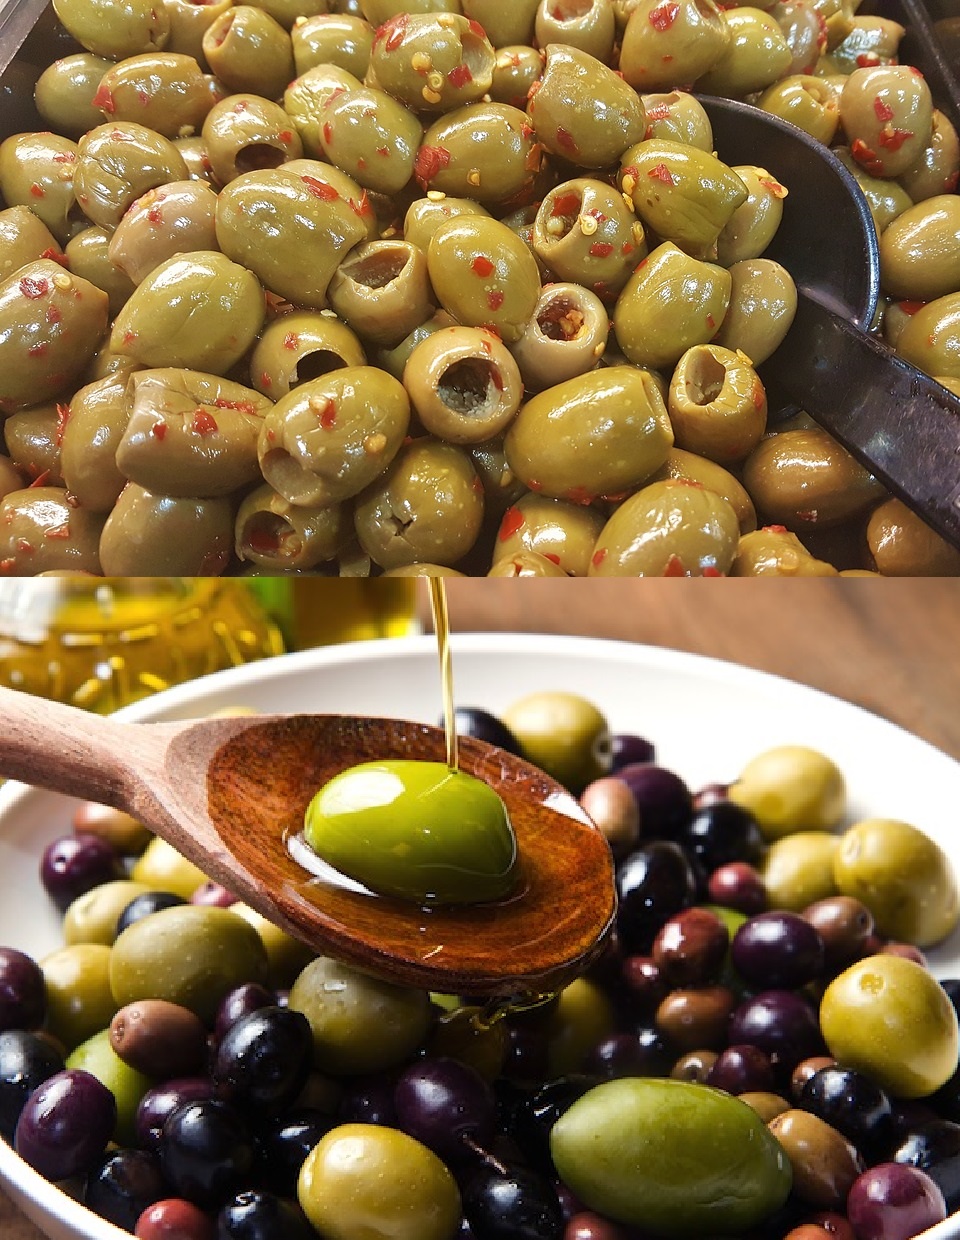 Disponible dans votre magasin bio à Tassin, des olives bio en libre-service